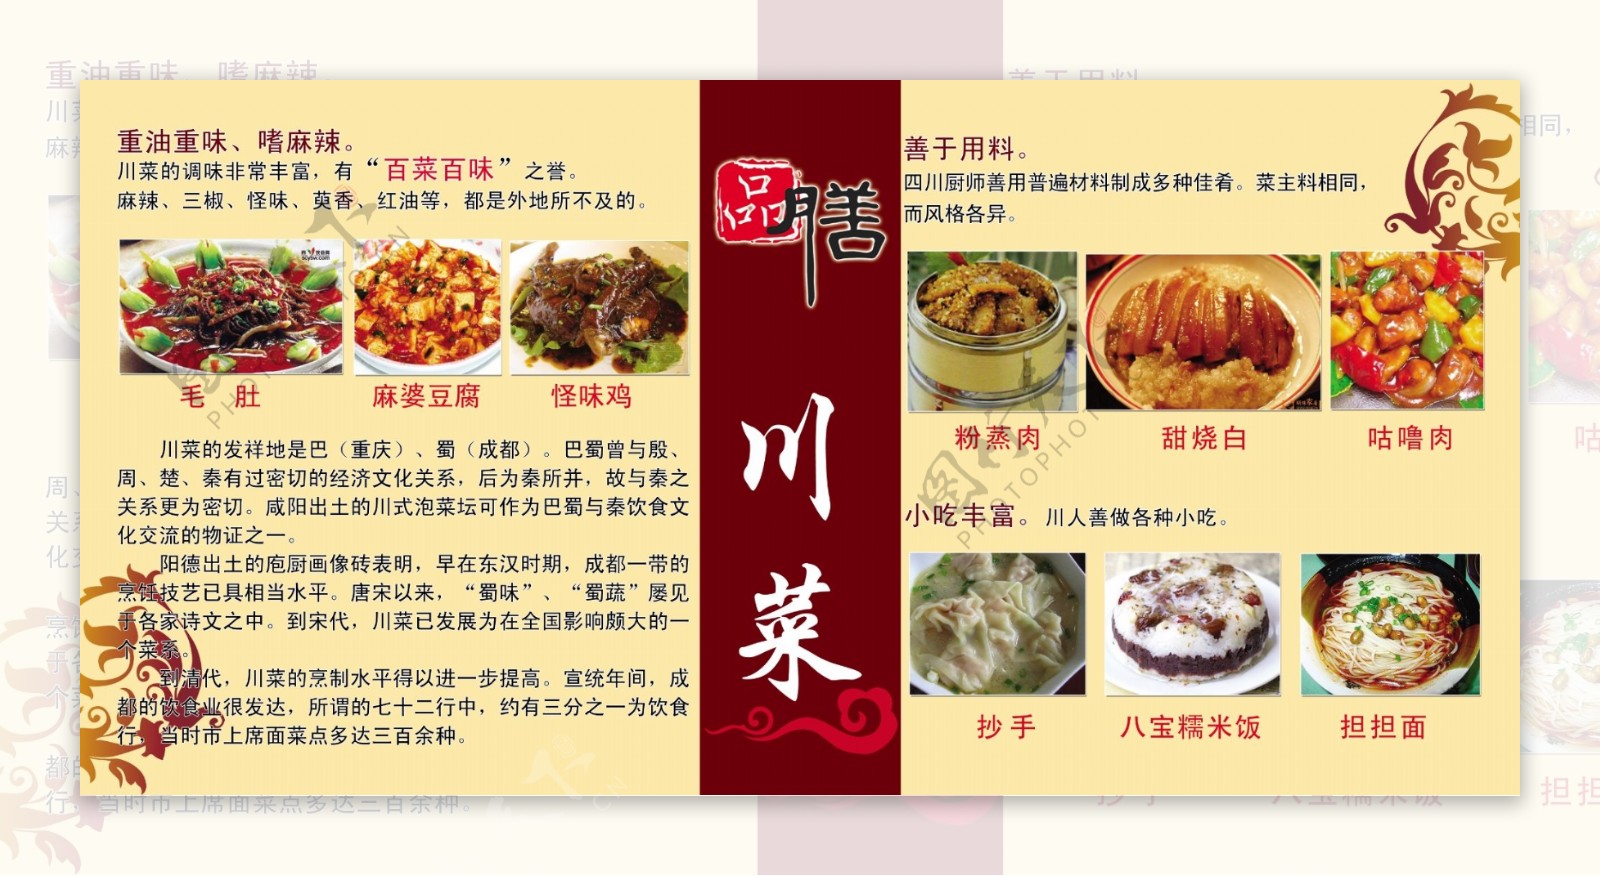 川菜餐厅挂图广告PSD素材